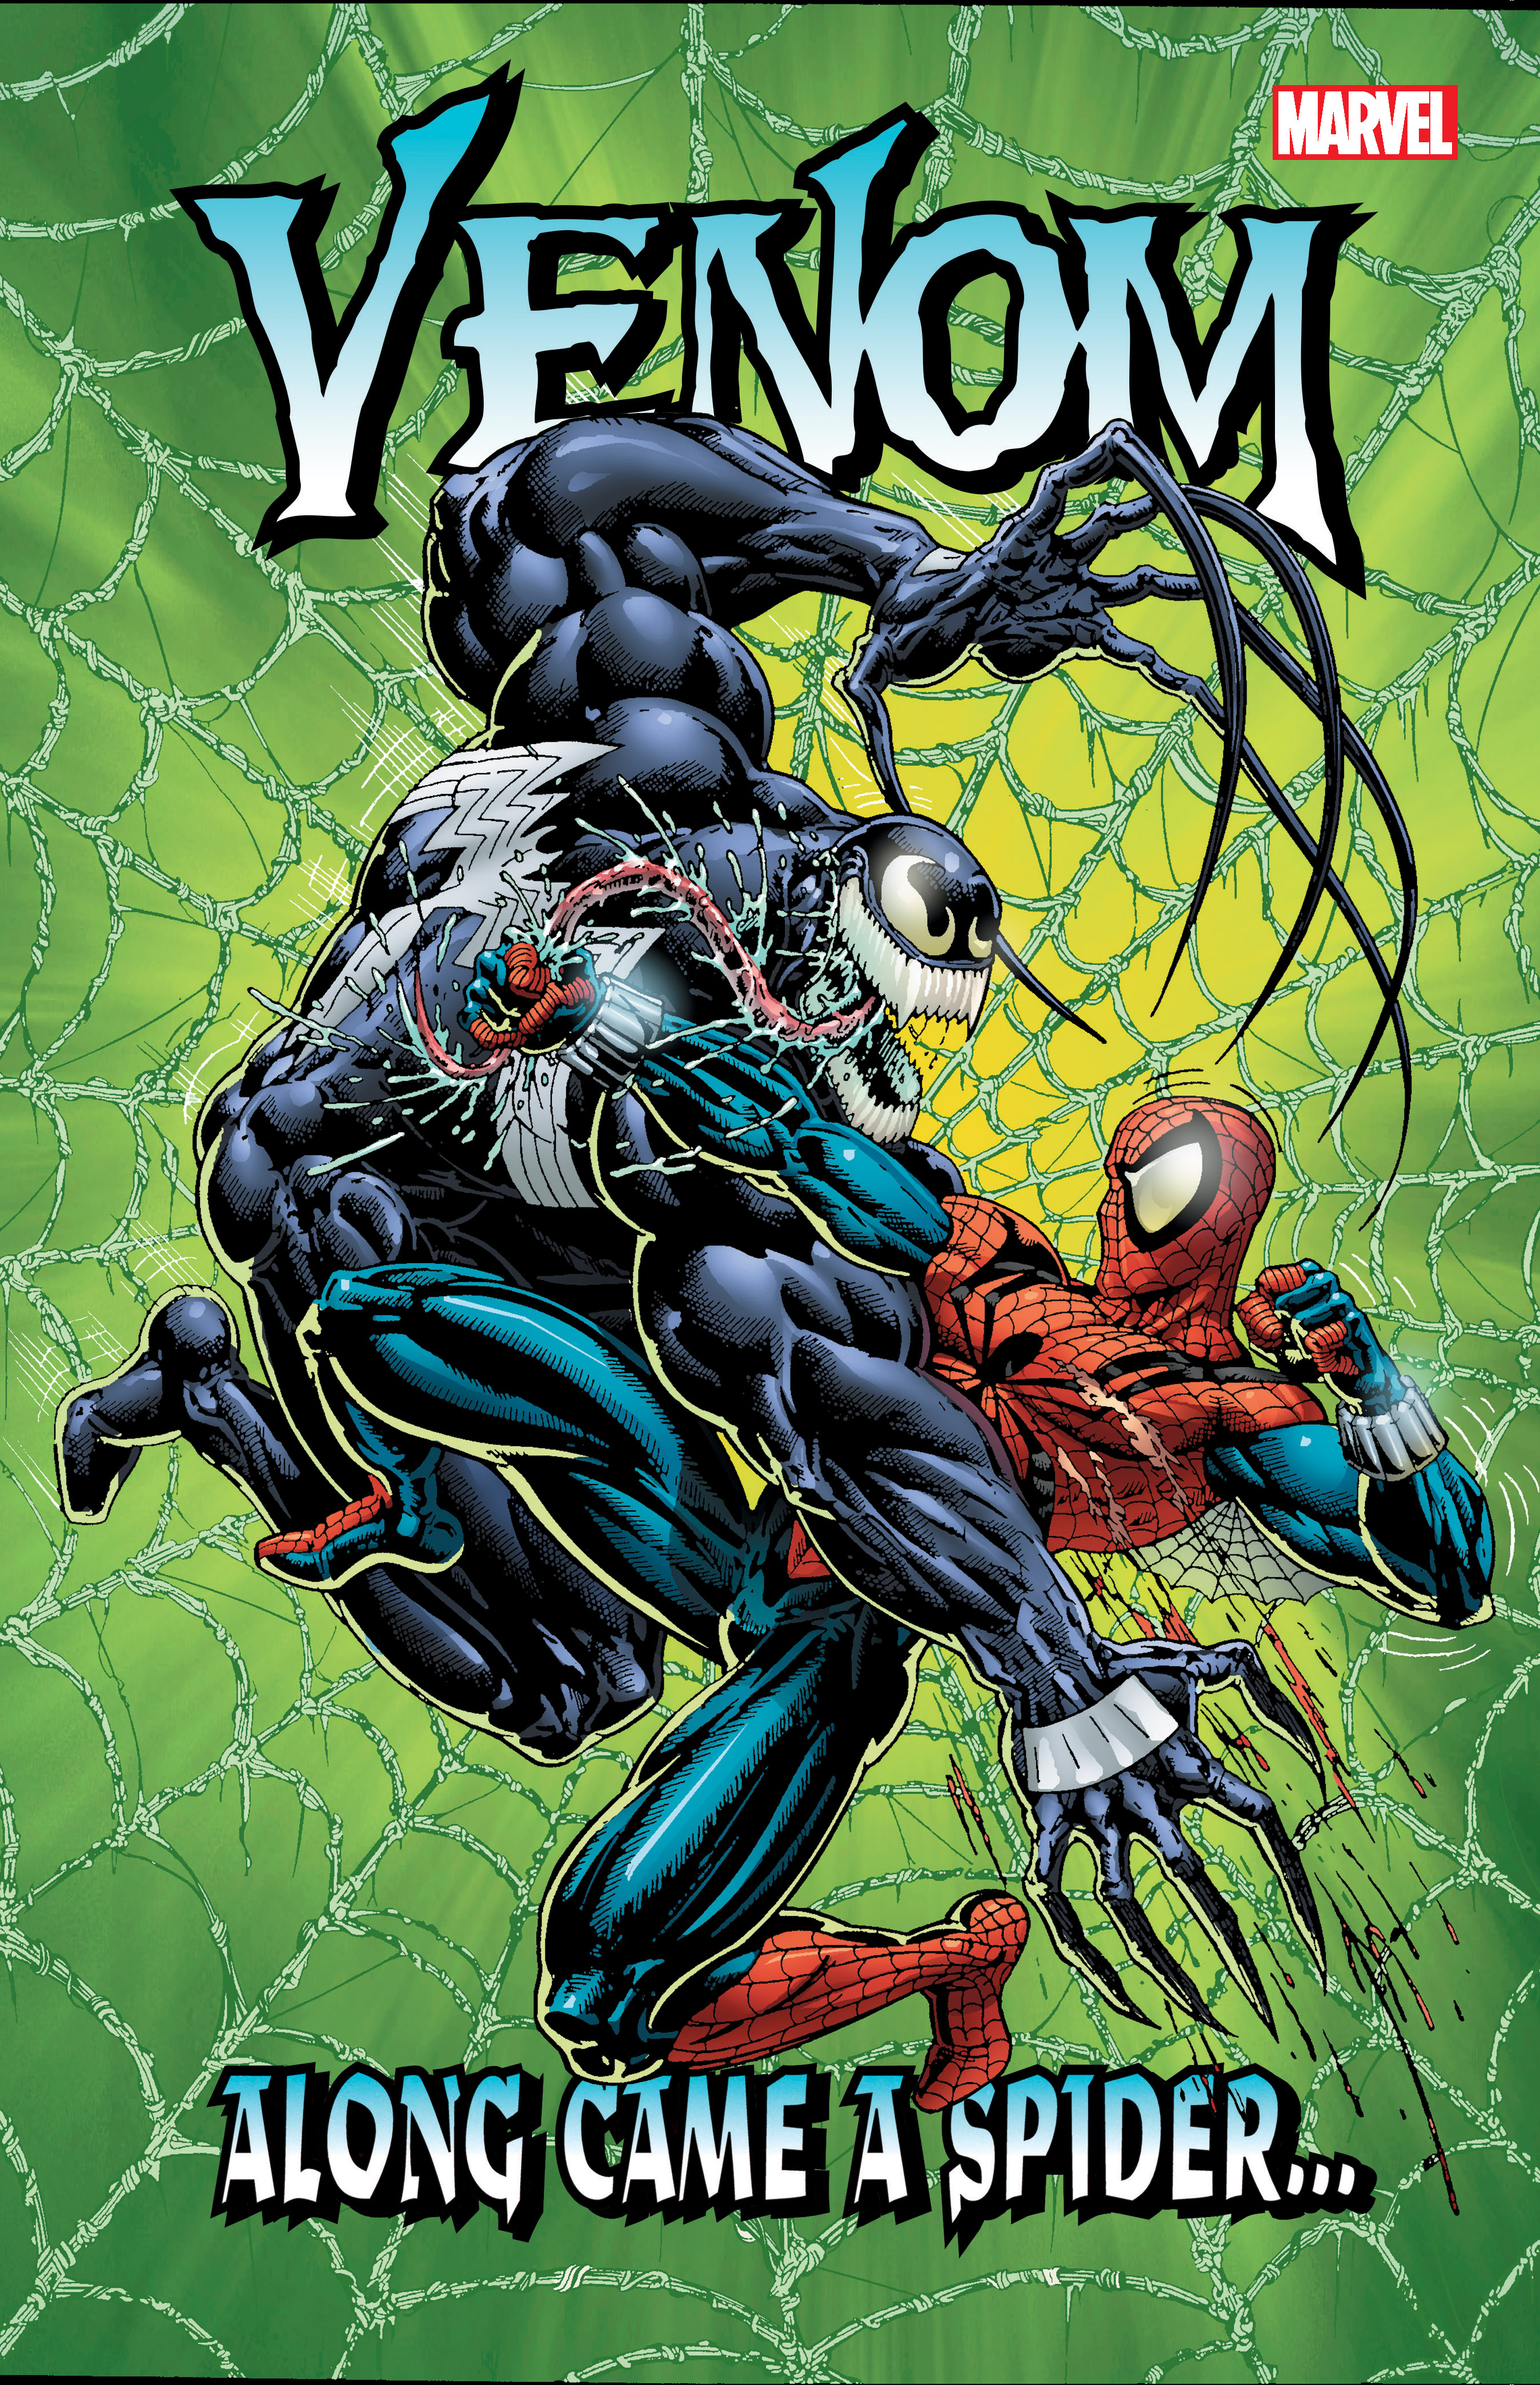 Venom: Along Came A Spider… (Trade Paperback)